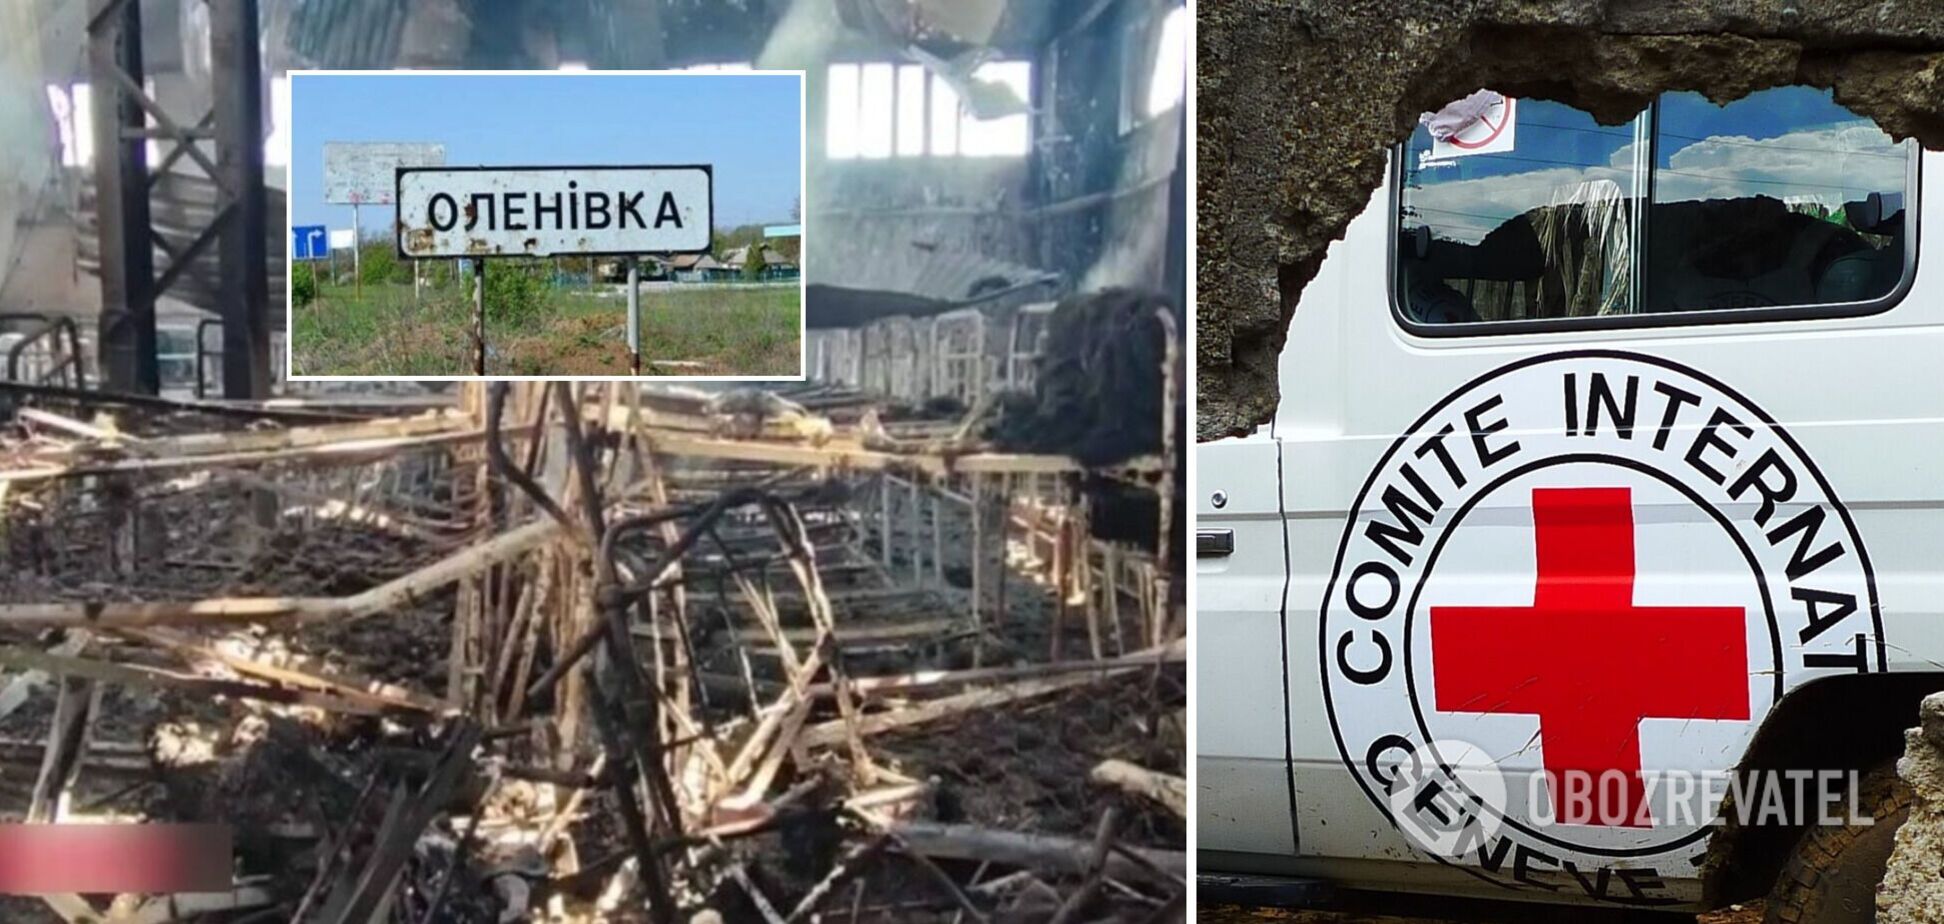 Красный Крест попросил доступ в Еленовку: мы хотим эвакуировать оттуда раненых украинцев